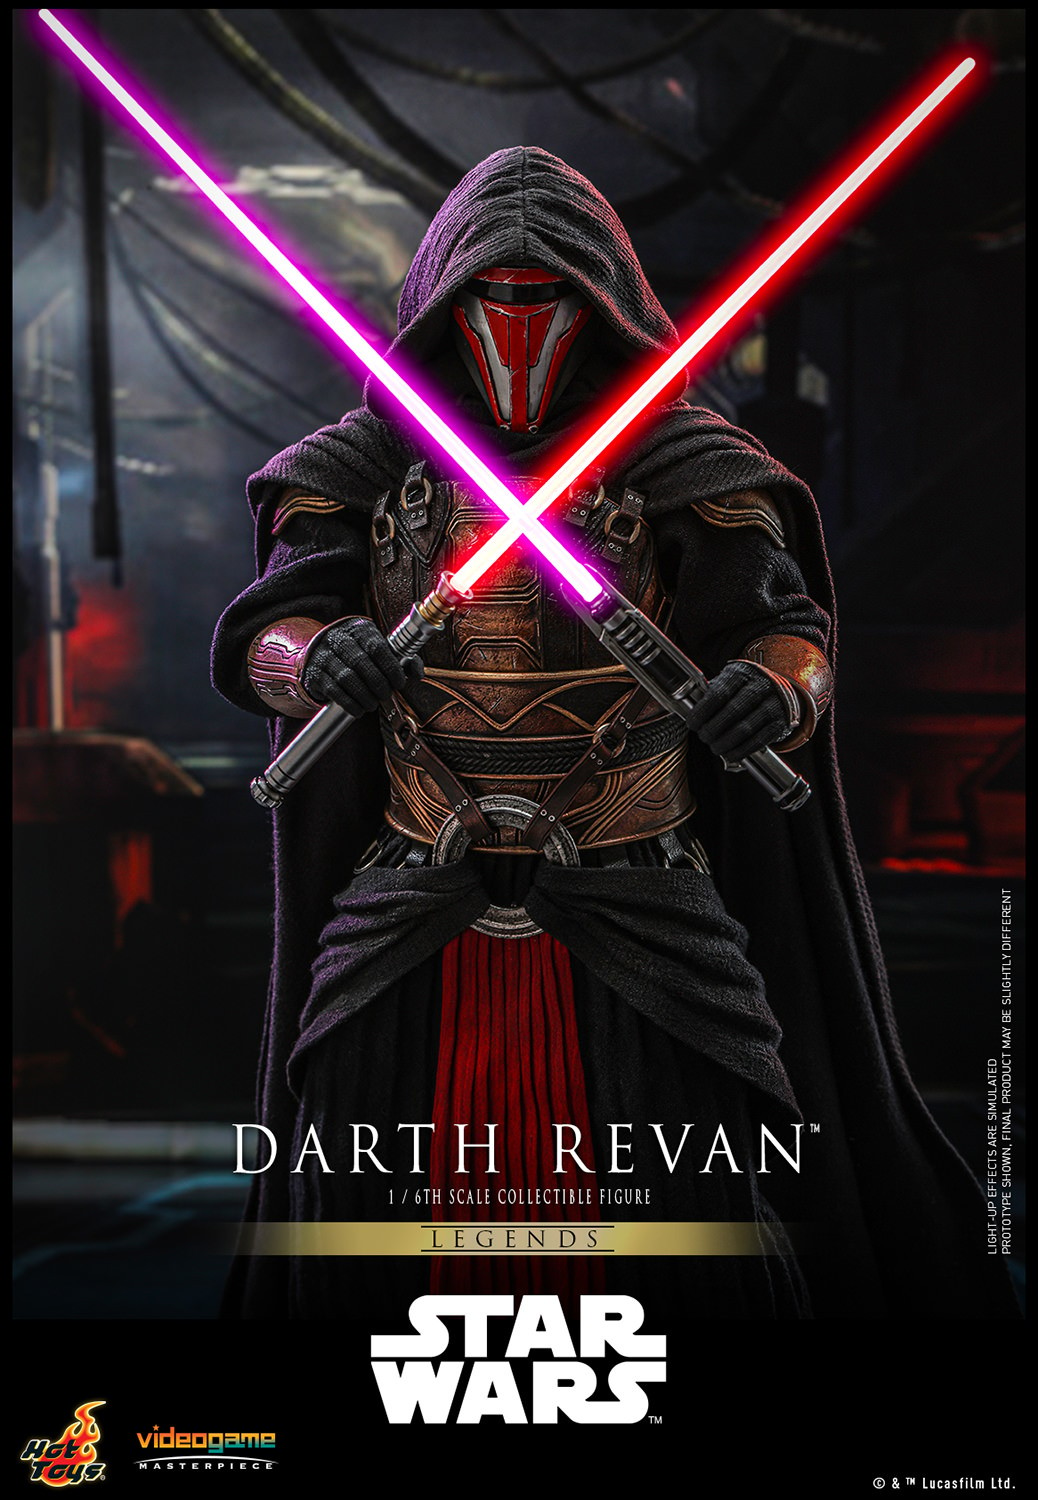 Darth Revan™ (Special Edition) Exclusive Edition (Prototype Shown) View 1